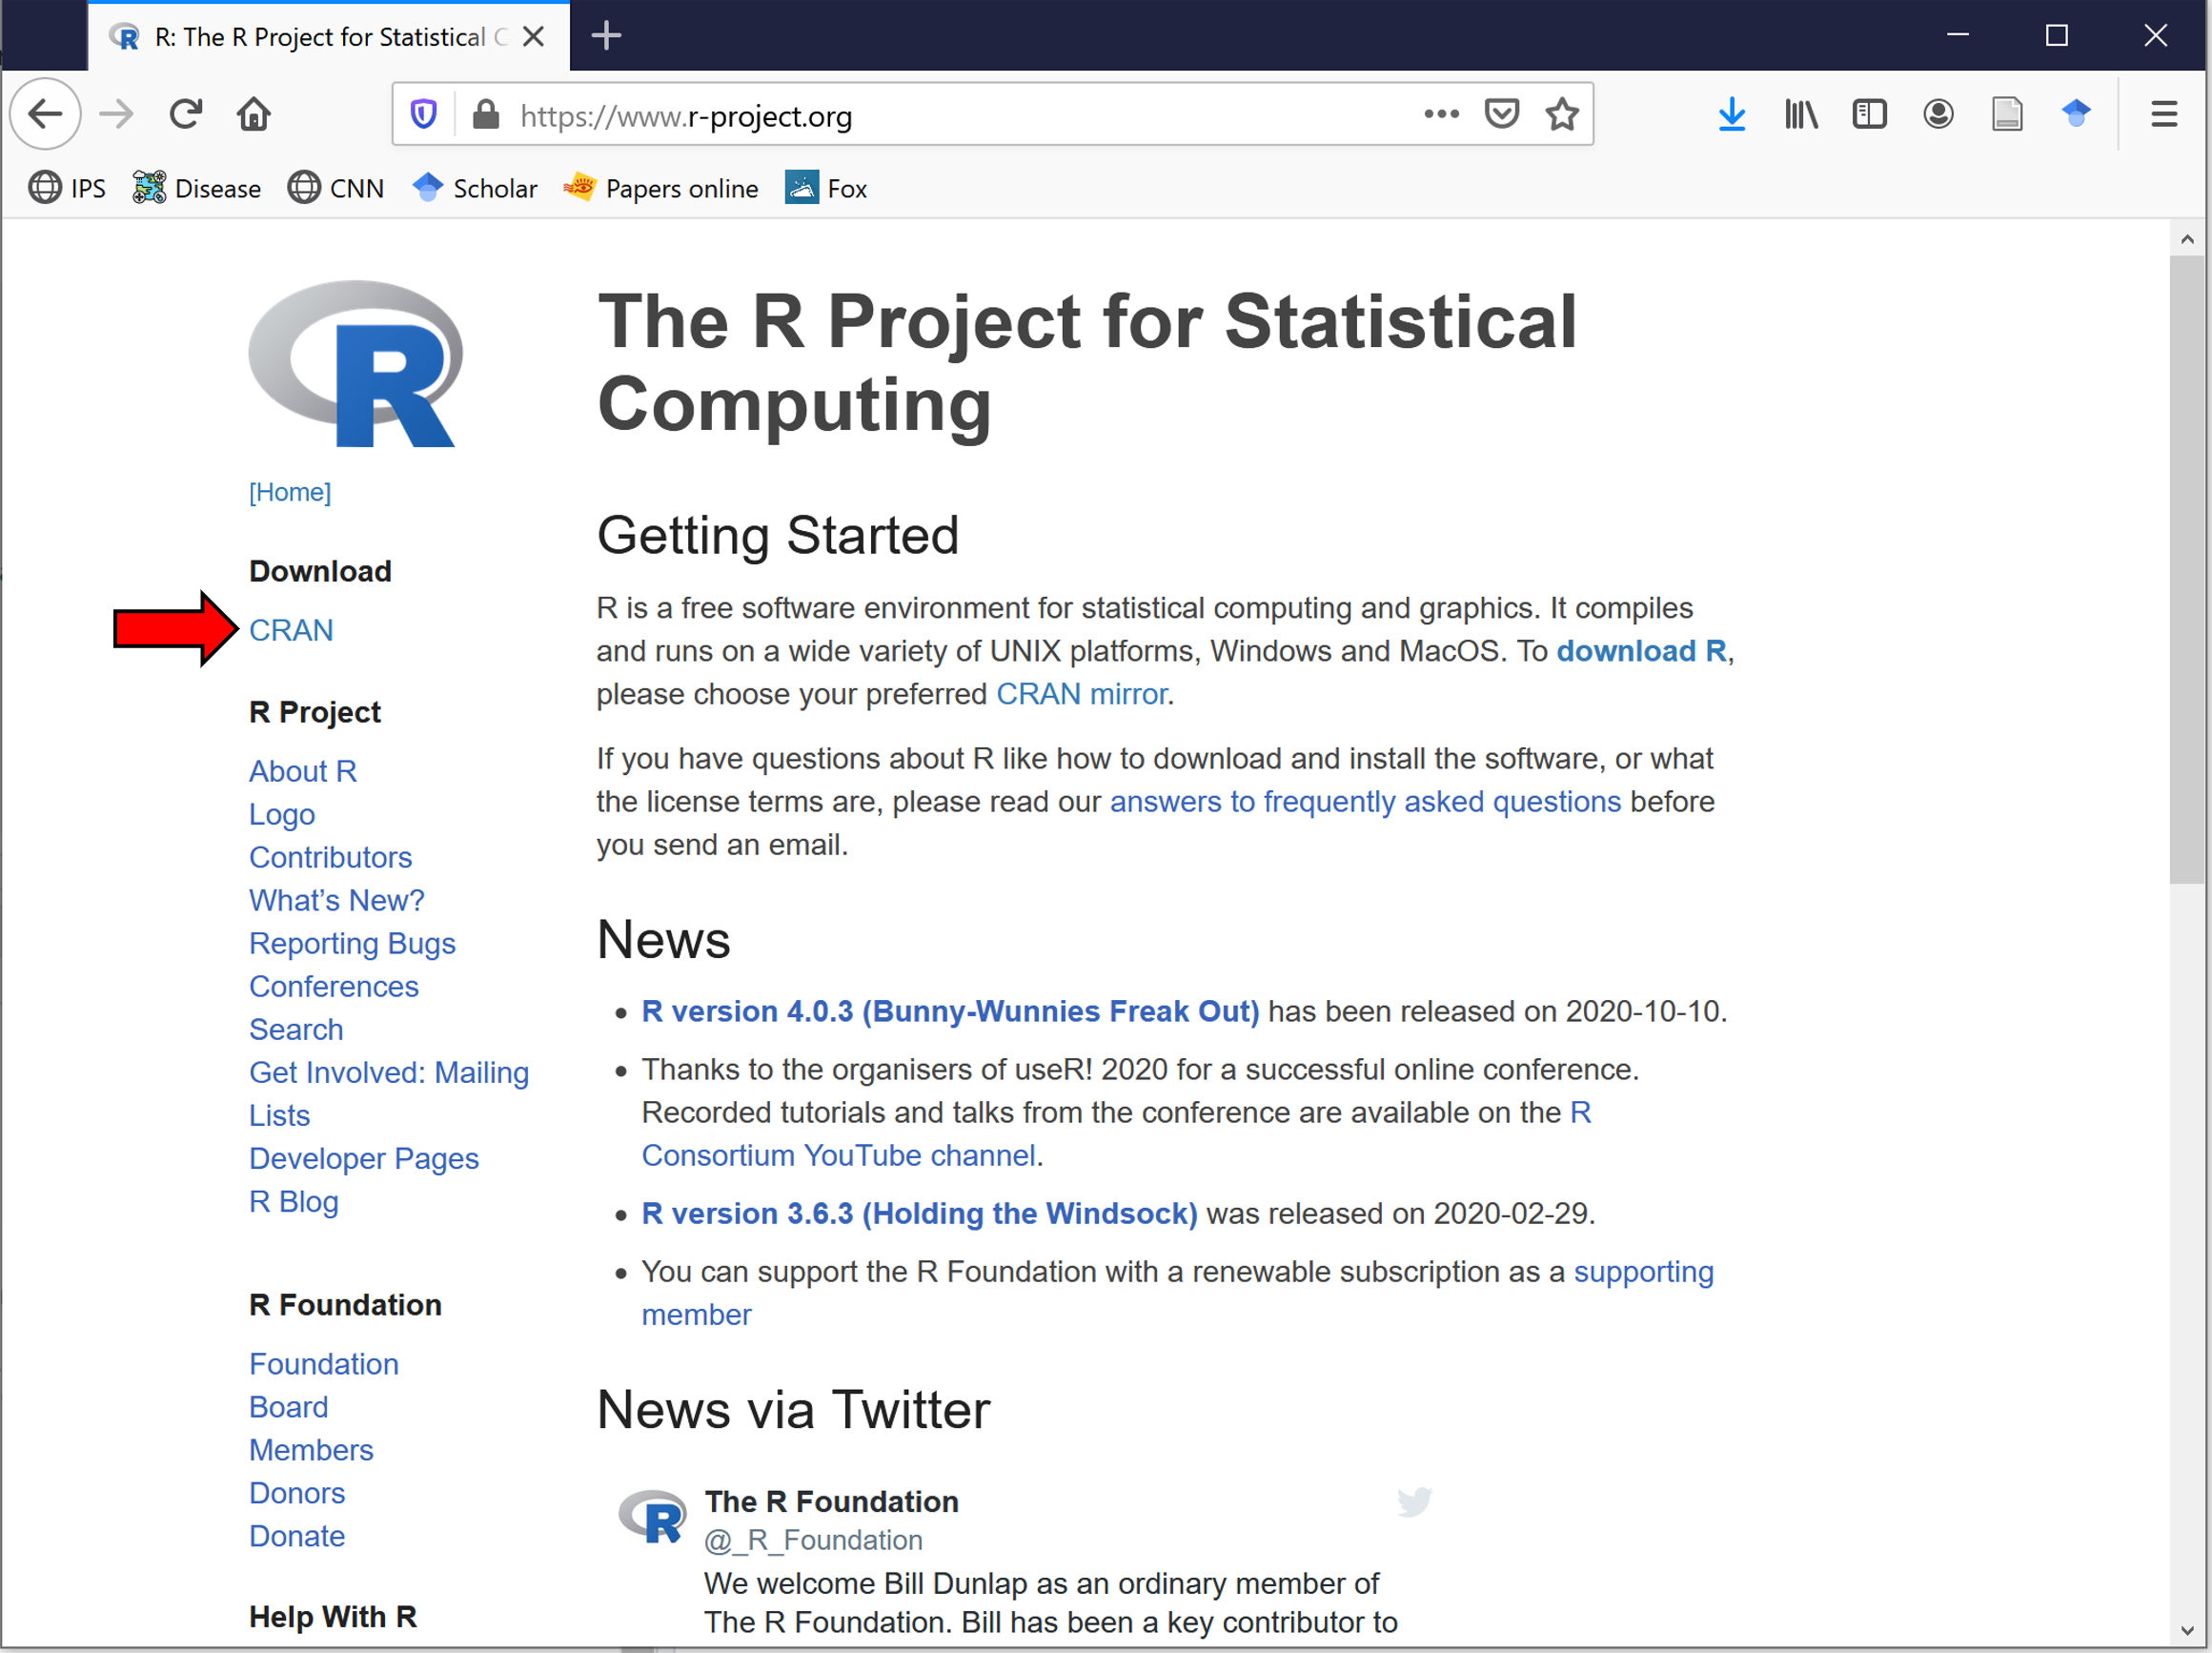 RProject Webpage